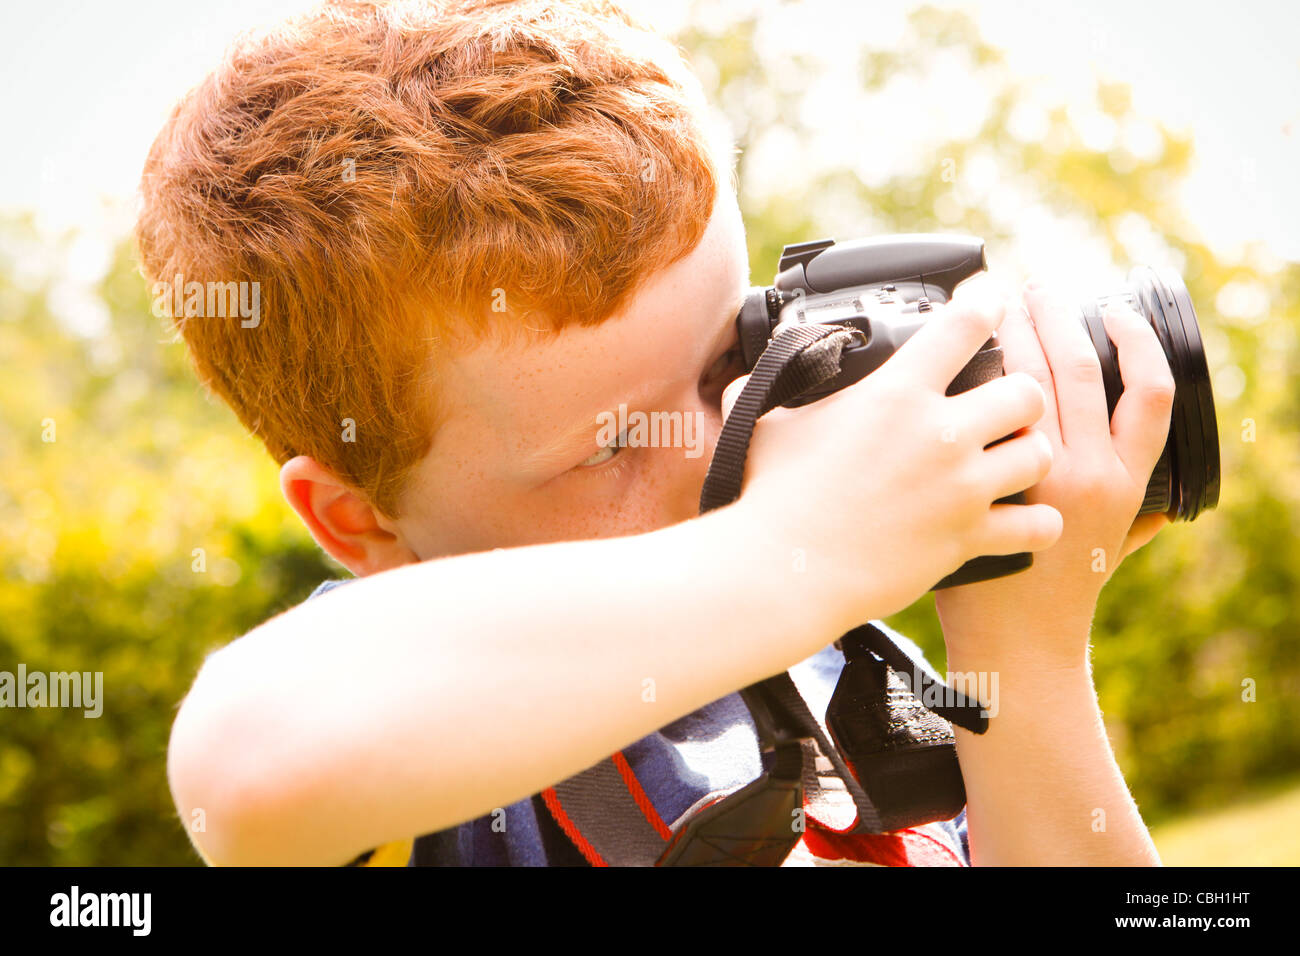 Un giovane ragazzo di età compresa tra i 7, utilizzando una fotocamera reflex digitale in un giardino soleggiato. Foto Stock